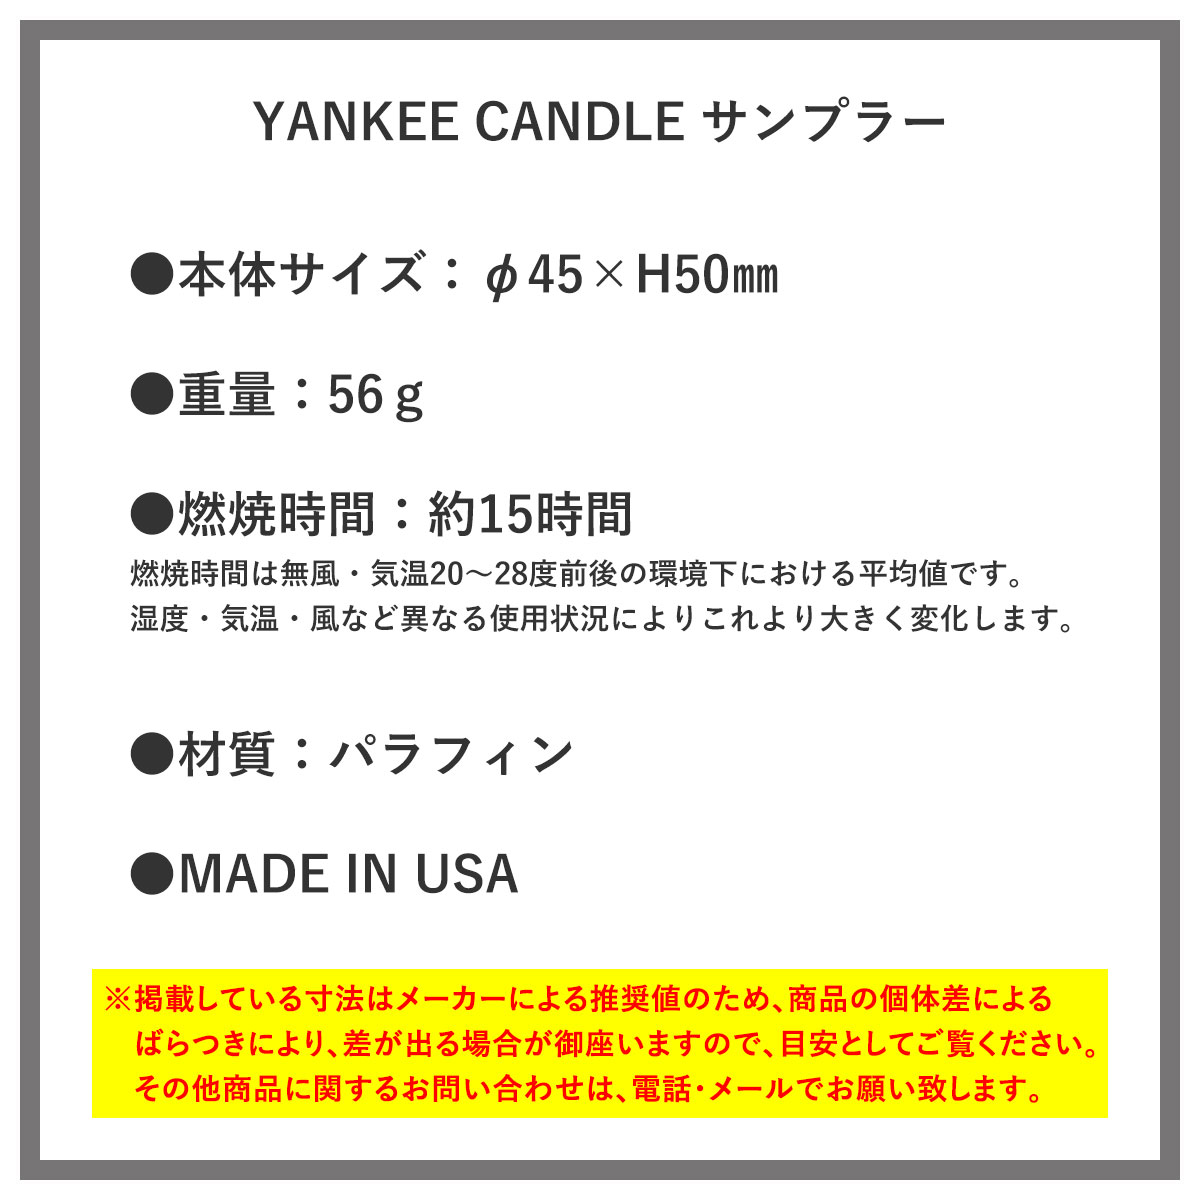 ヤンキーキャンドル YANKEE CANDLE 正規品 YCｻﾝﾌﾟﾗｰ Lﾗﾍﾞﾝﾀﾞｰ YK0010530 4901435928395